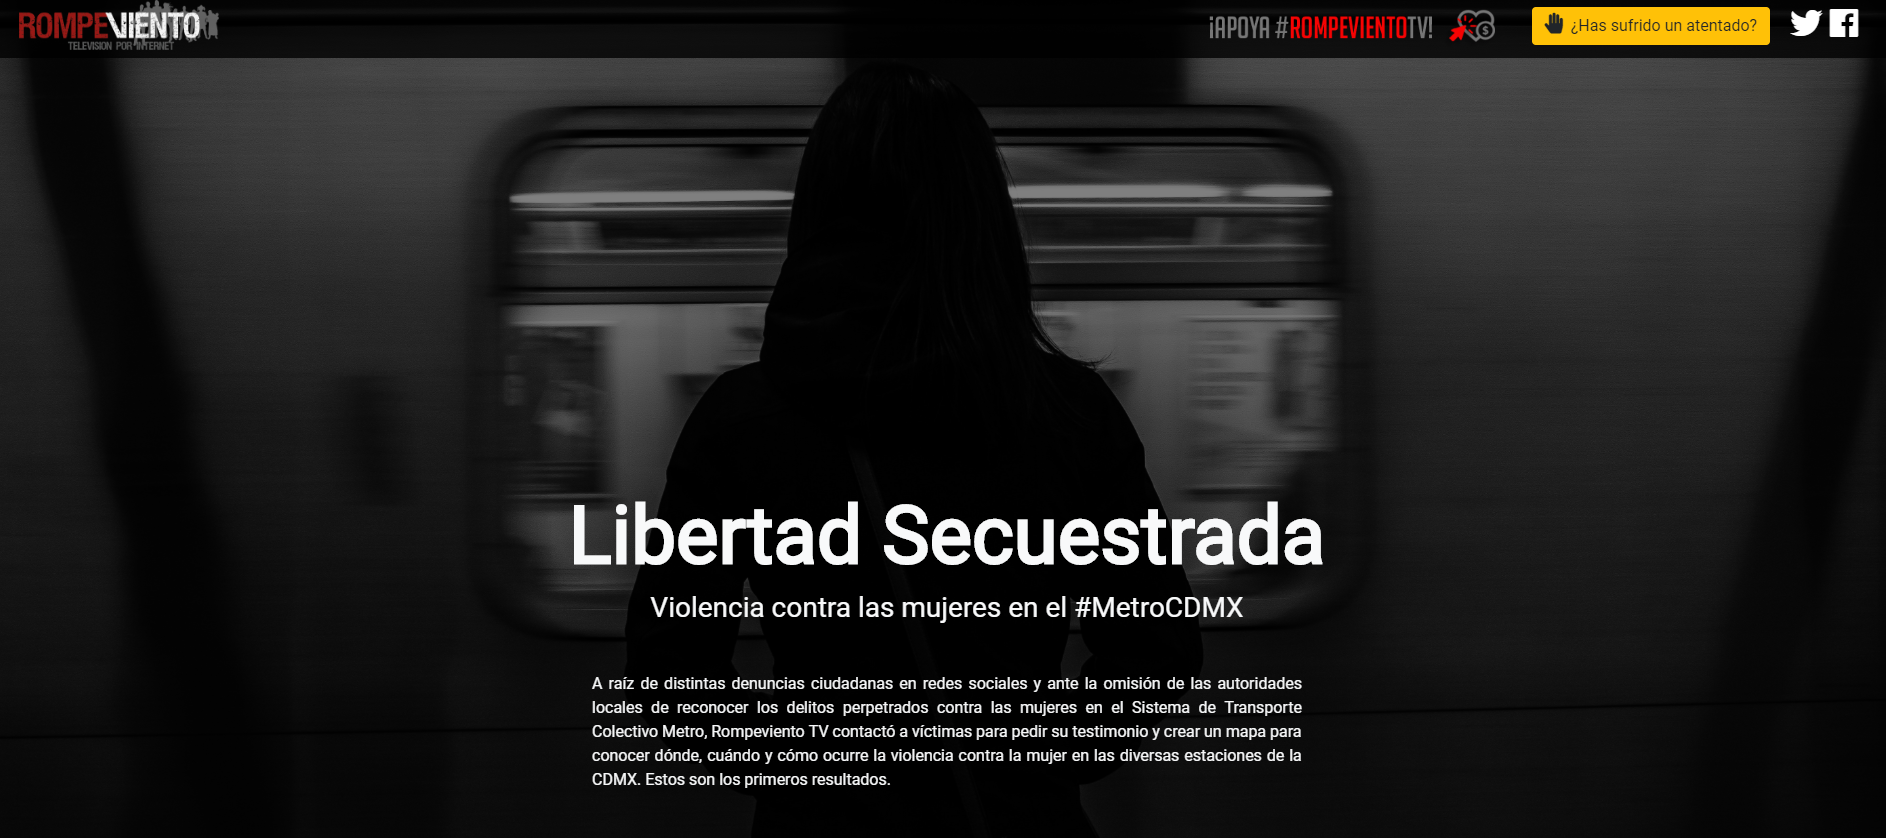 Ineficiencia de autoridades ante intentos de secuestro en el Metro - Libertad Secuestrada #MetroCDMX